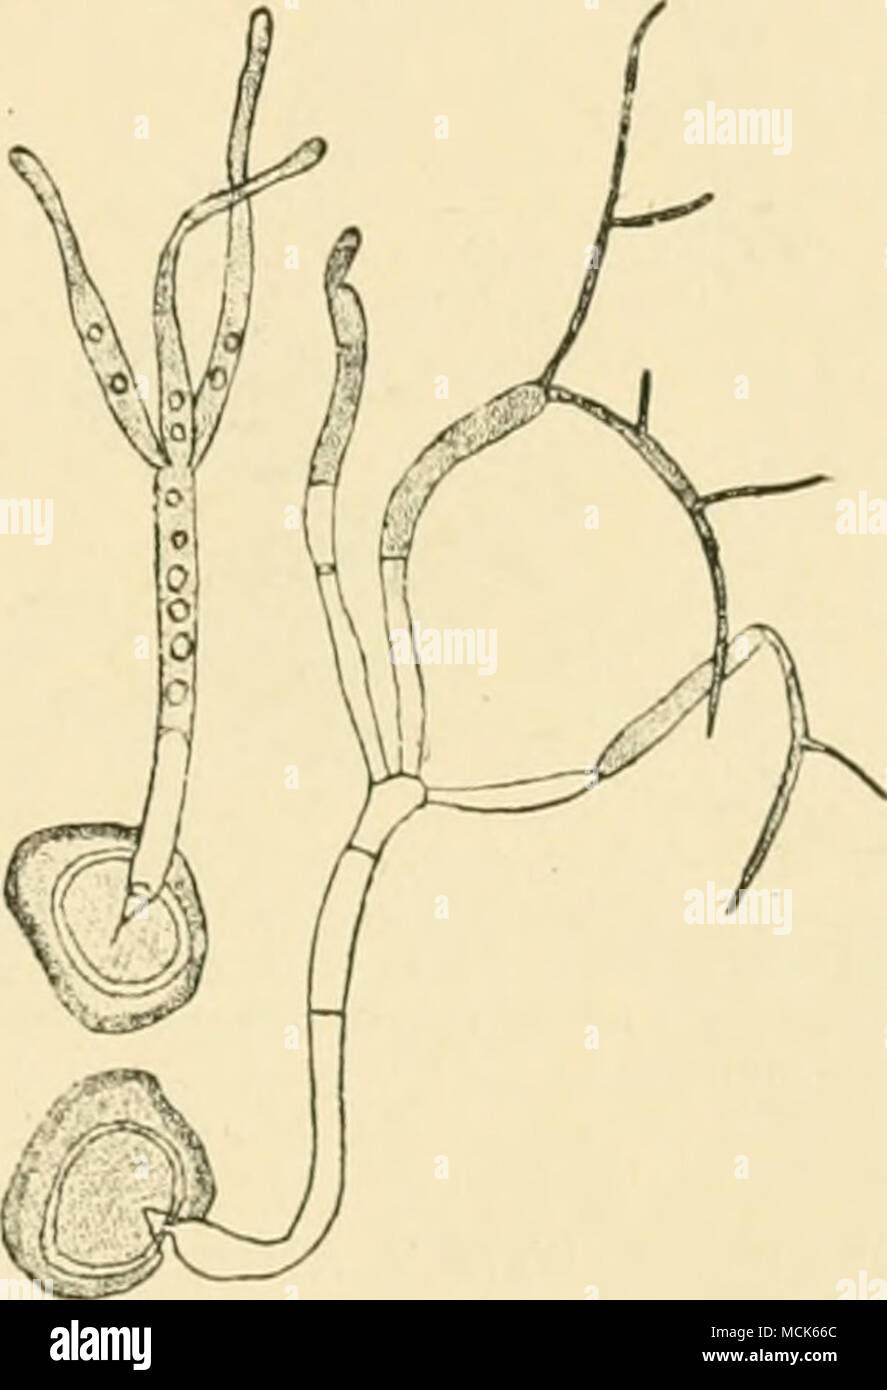 . Fio. lQ.âEntyloma Magnusii. La germine- tion ; les spores d'un promycélium montre un verticille de trois branches avec empiècement apex pour former des tubes germinatifs ; l'autre montre deux, sur trois, les tubes germinatifs en libérant les sporidies ramifiés (conidies). Woronin (après.) E. leproidum Oedomyces leproides Trab.- (Sacc.)]. Betteraves malades-racine, excroissances irrégulières expositions qui vous sont remplis de la spore brun-poudre de ce champignon. E. nympheae (Cunningham) Setch.-'' sur diverses espèces d'Nympliea en Amérique, en Afrique et en Europe. Melanotaenium.^ dans les patchs unicellulaires spores sur un mycélium intercellulaire l Banque D'Images